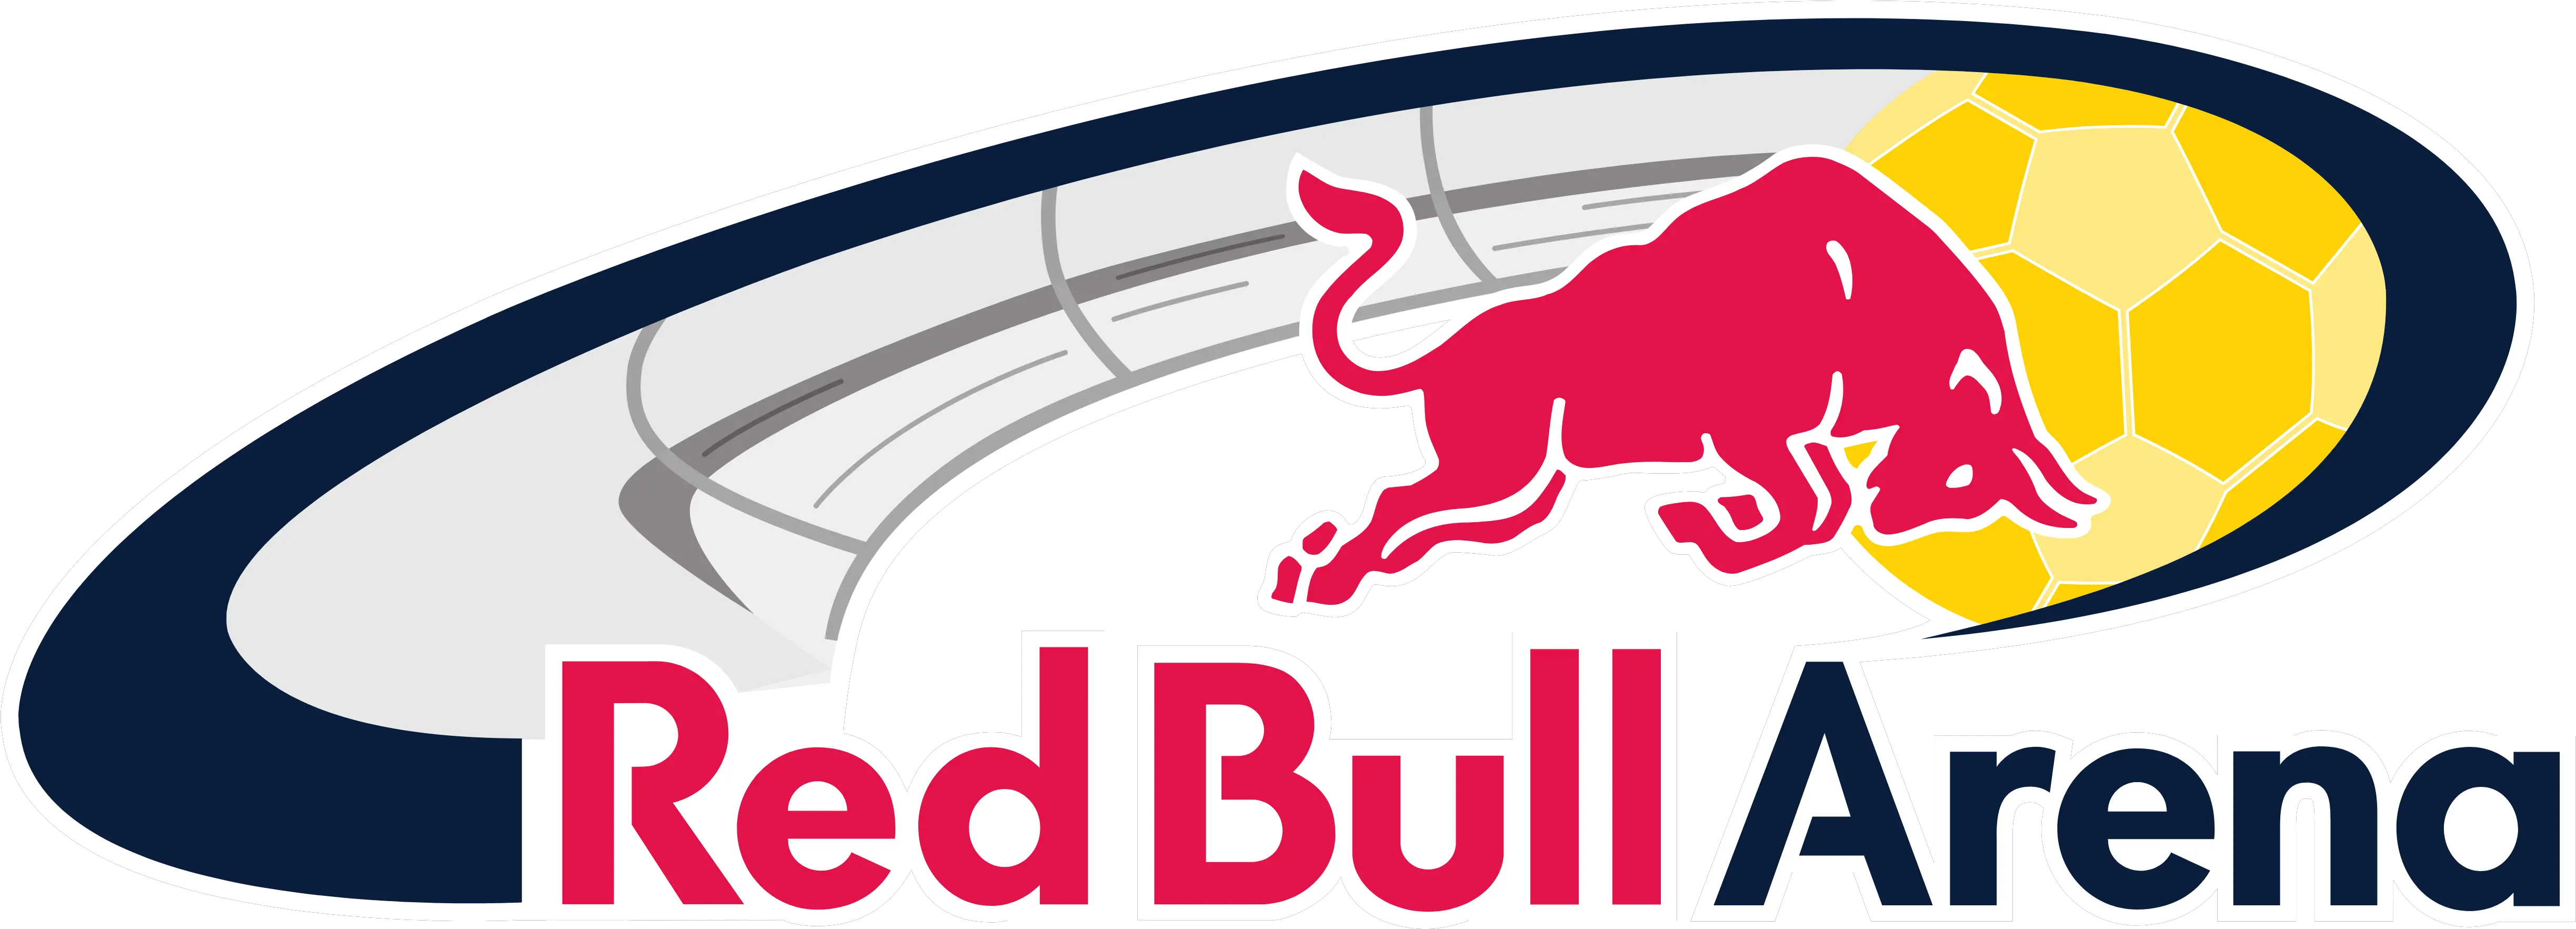 Red Bull Sport U2013 Logos Download New York Red Bulls Png Esport Logos